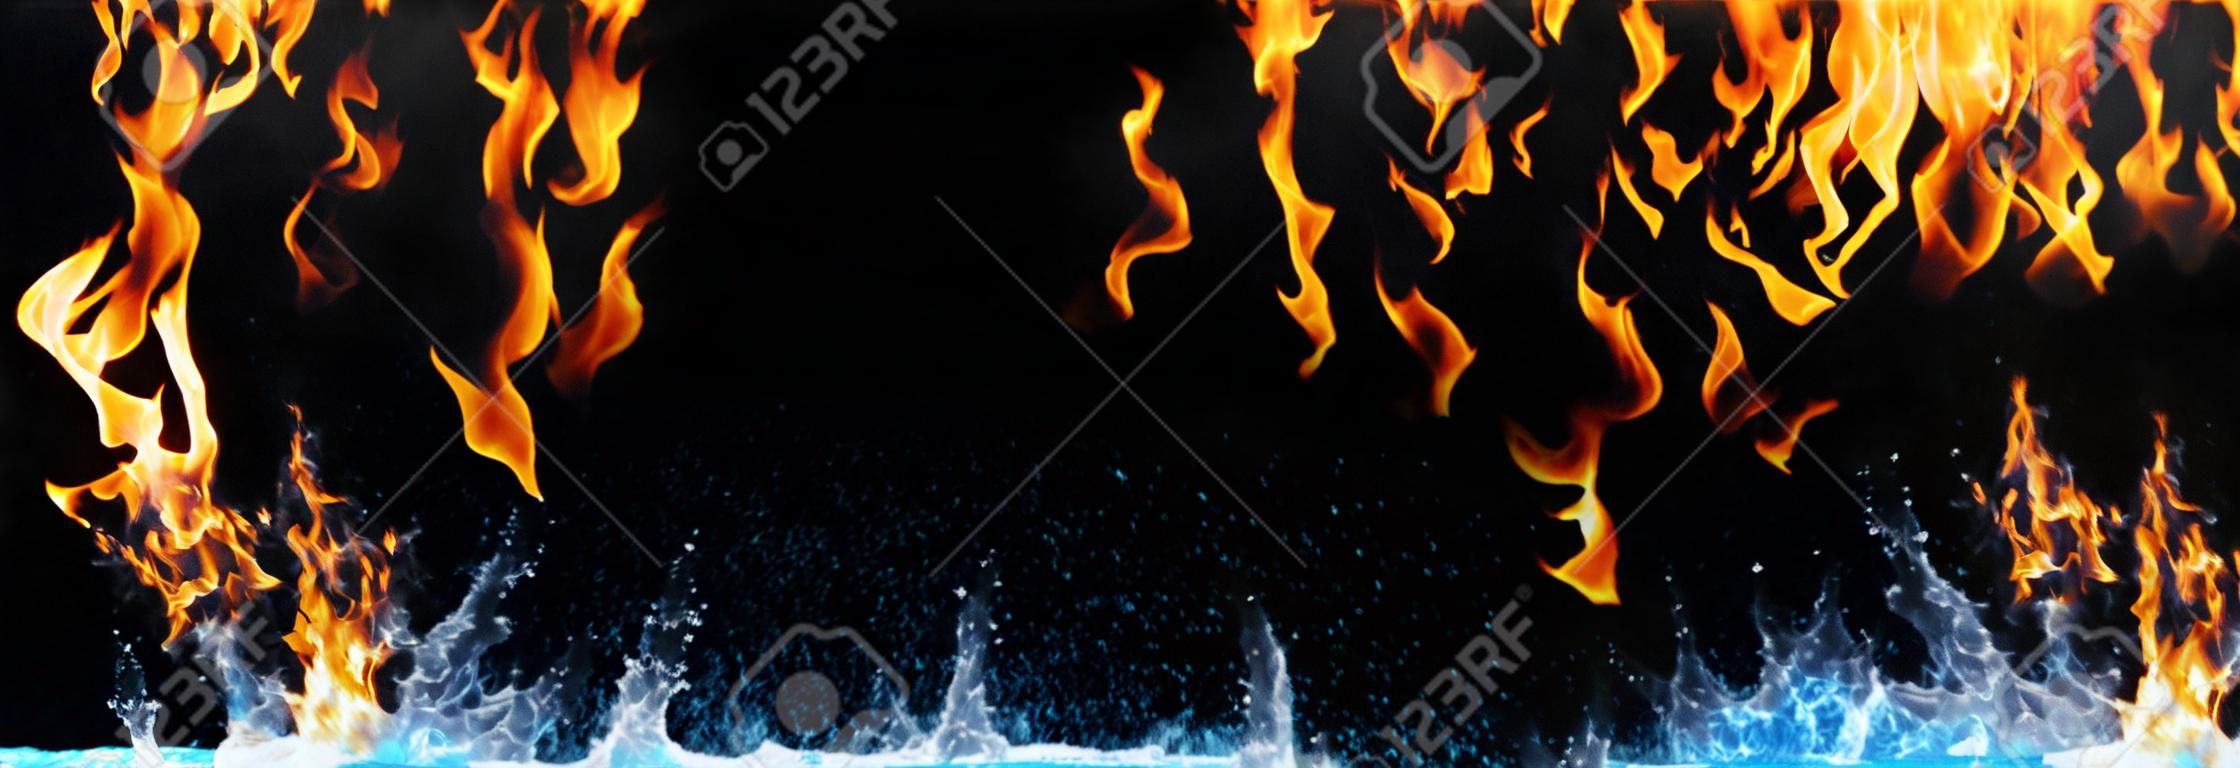 fogo e água no preto - energia oposta